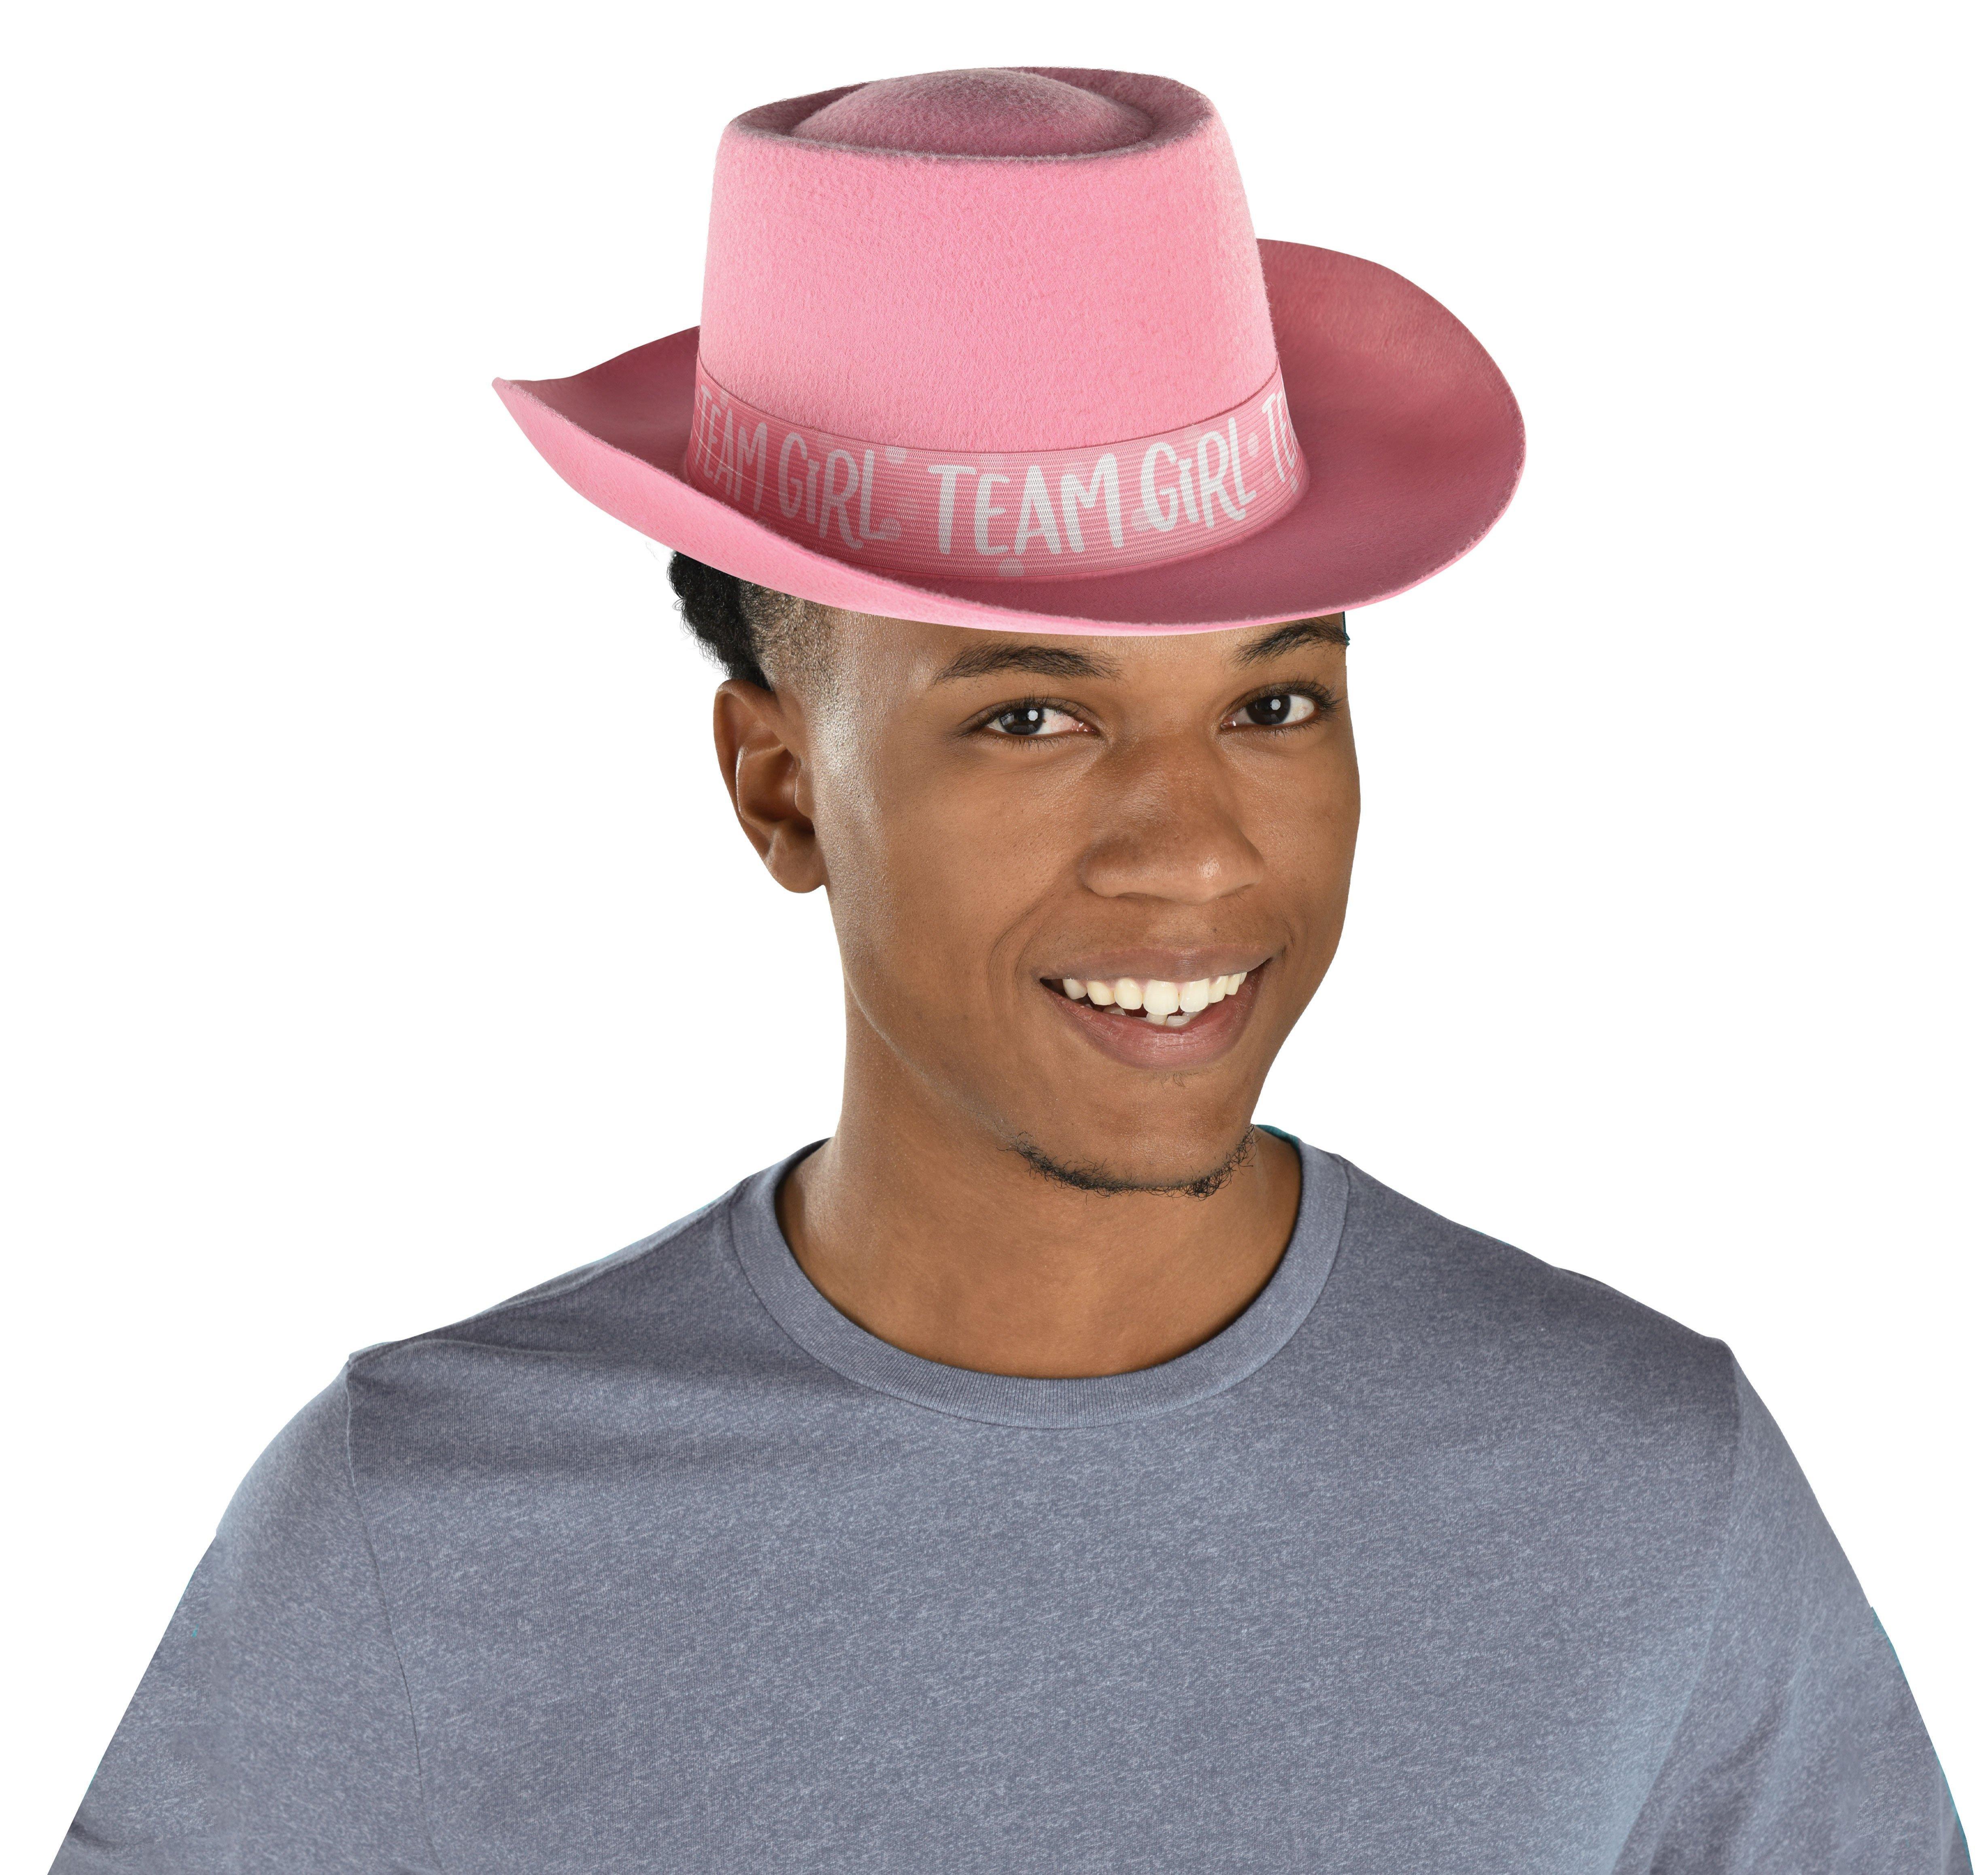 Pink Team Girl Gender Reveal Felt Cowboy Hat - The Big Reveal